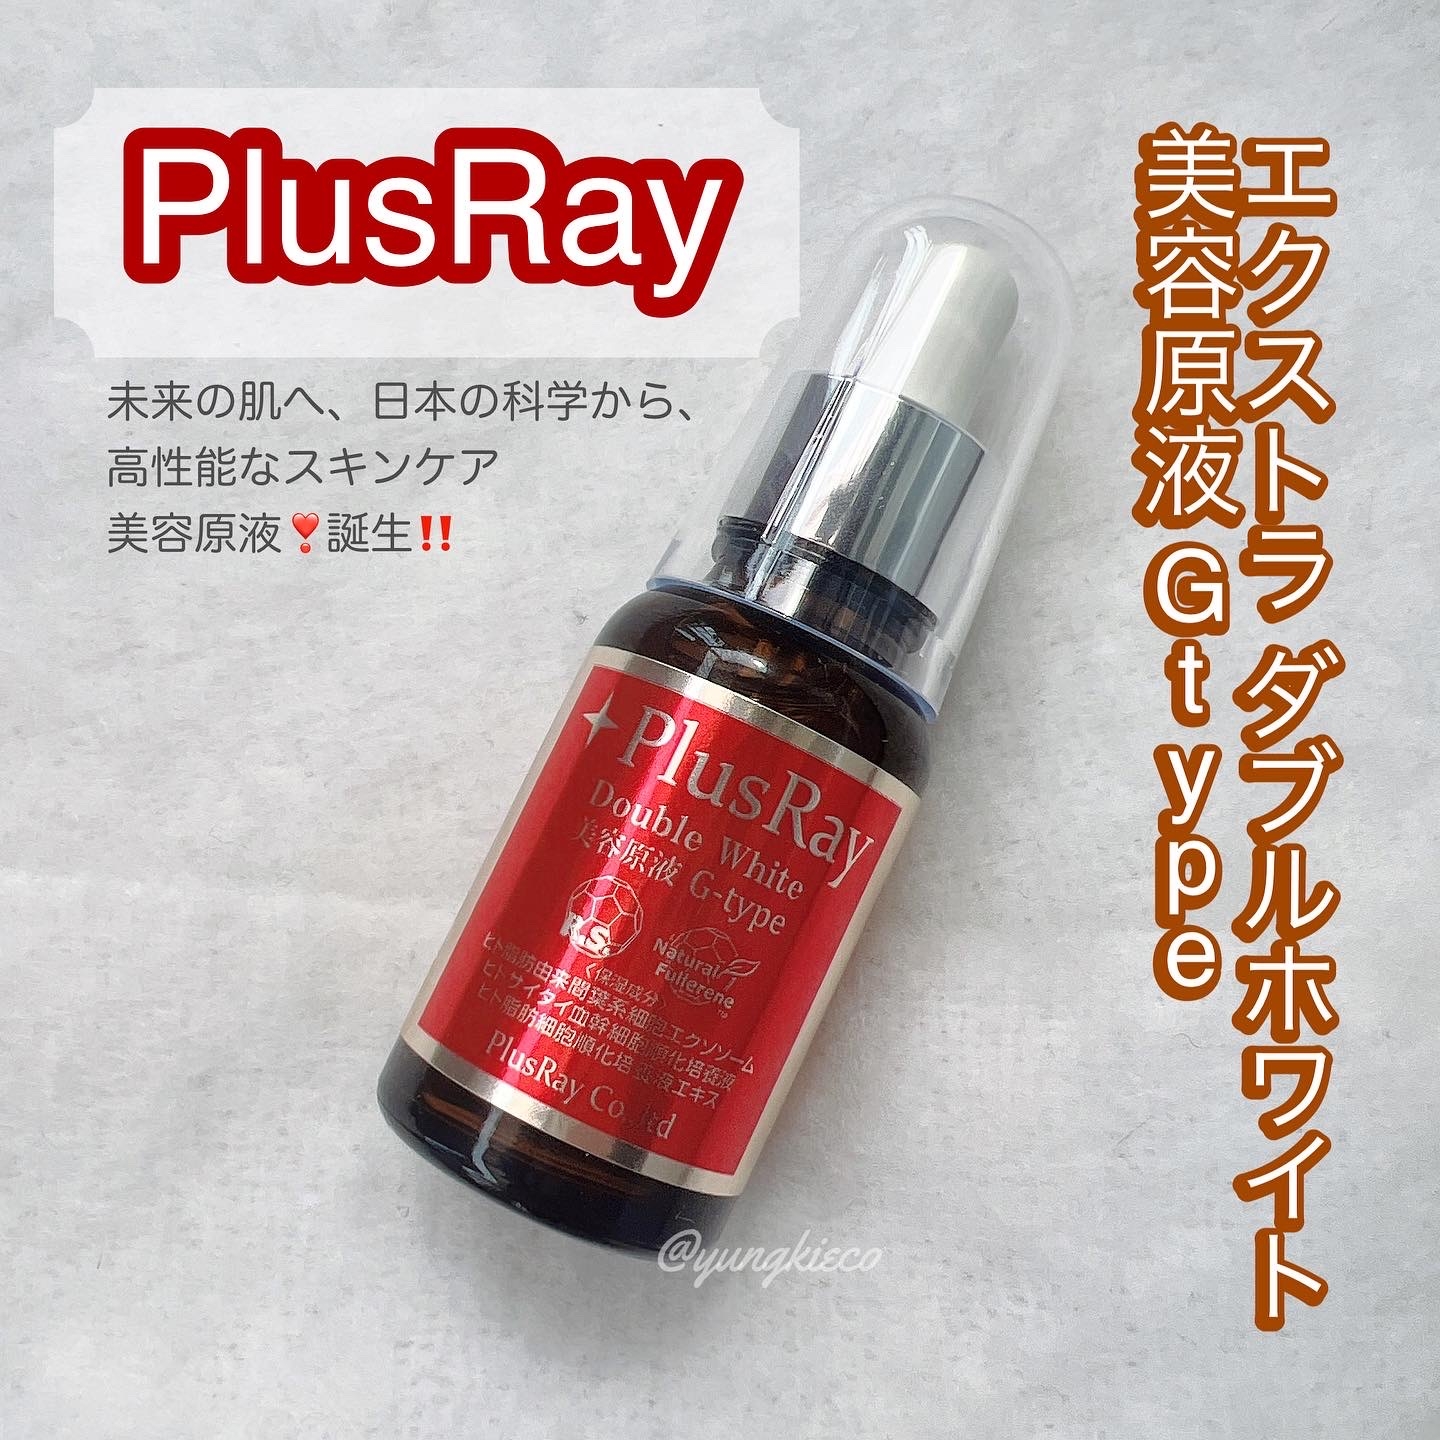 PlusRay(プラスレイ) エクストラ ダブルホワイト美容原液 プロフェッショナルの良い点・メリットに関するyungさんの口コミ画像1